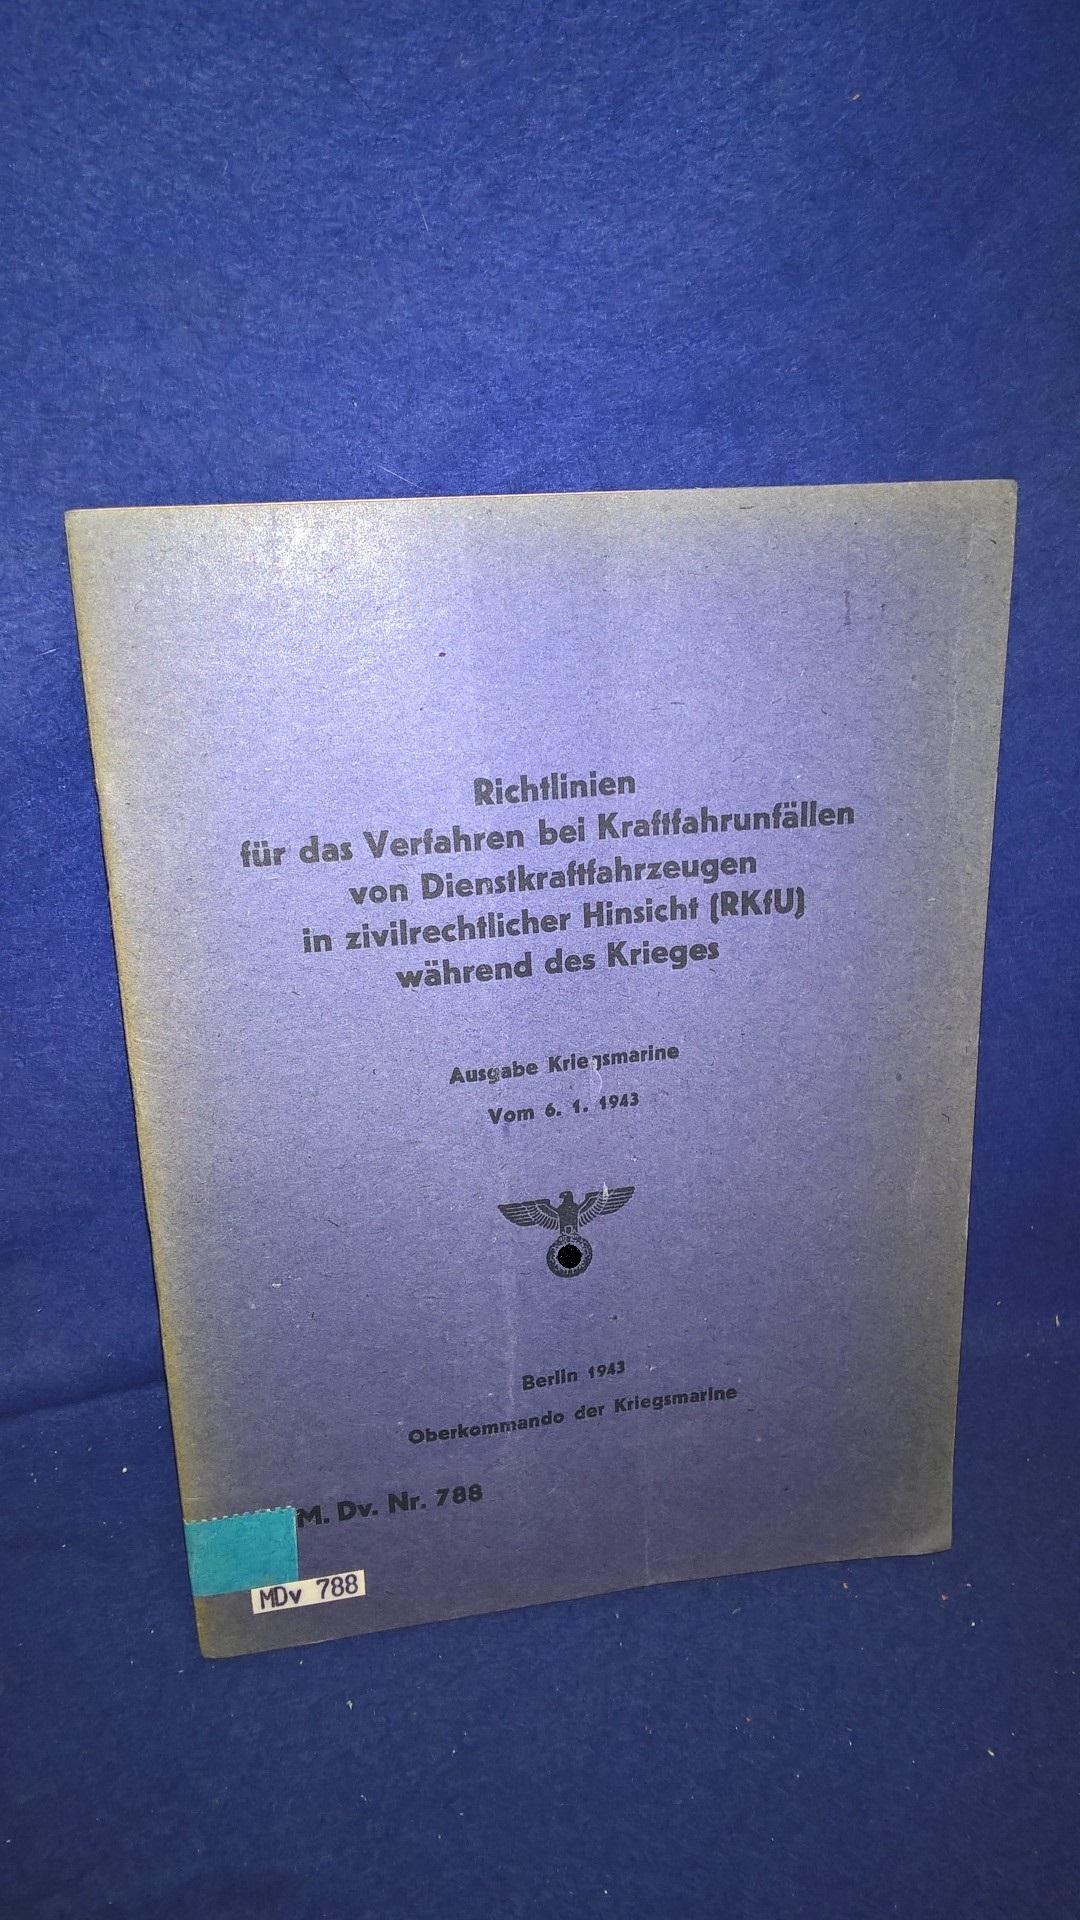 M.Dv. Nr. 788. Richtlinien für das Verfahren bei Kraftfahrunfällen von Dienstkraftfahrzeugen in zivilrechtlicher Hinsicht (RKfU.) während des Krieges vom 15.1.43. - Ausgabe der Kriegsmarine -.